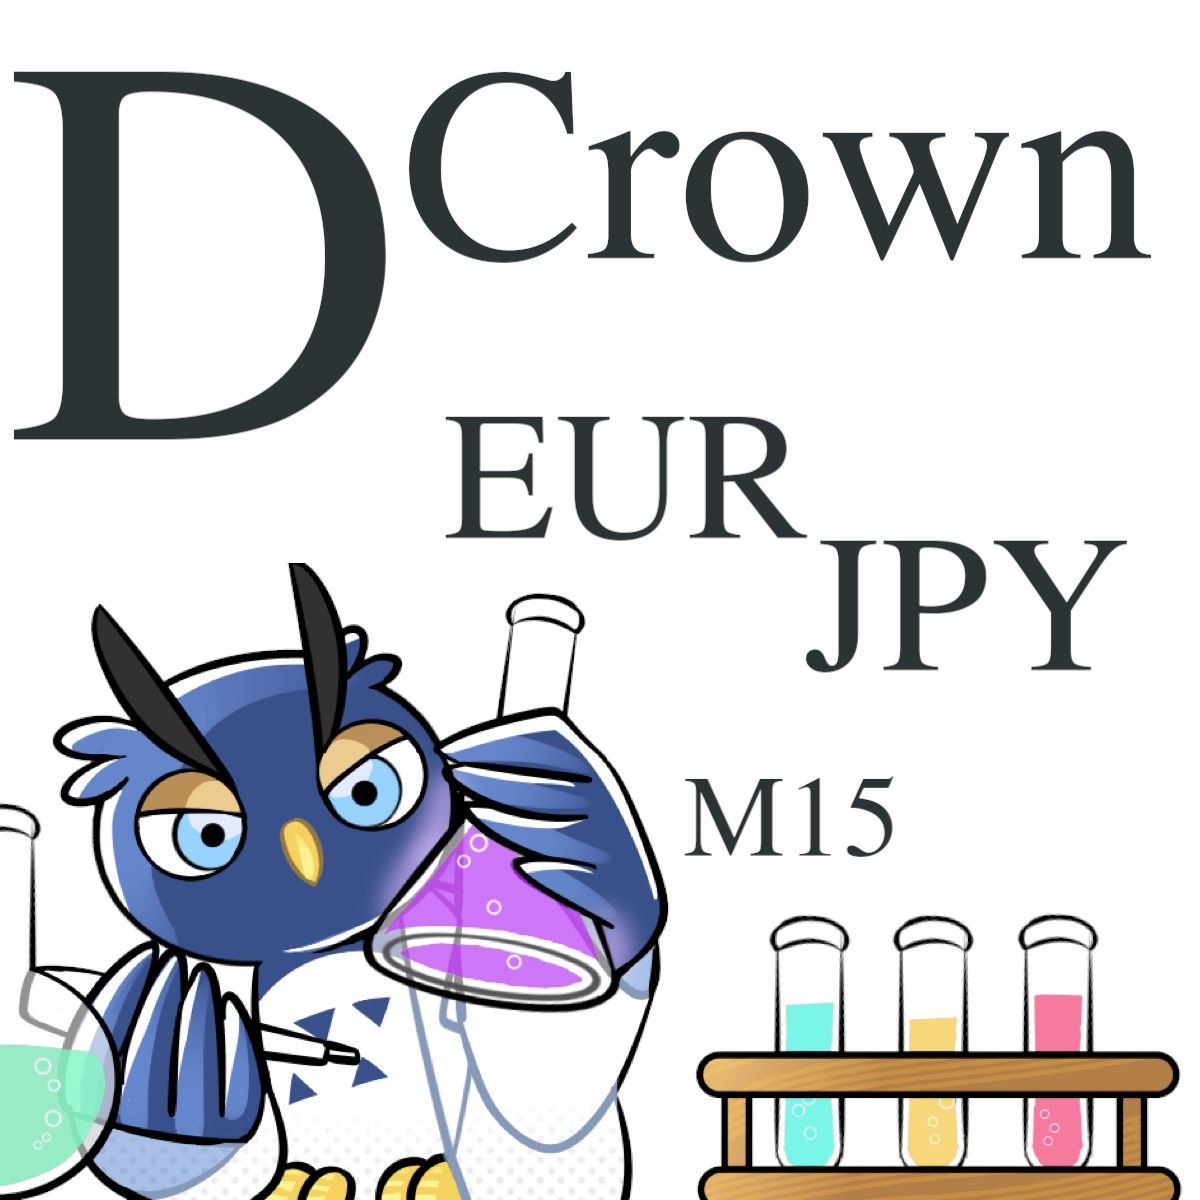 DCrown_EURJPY 自動売買